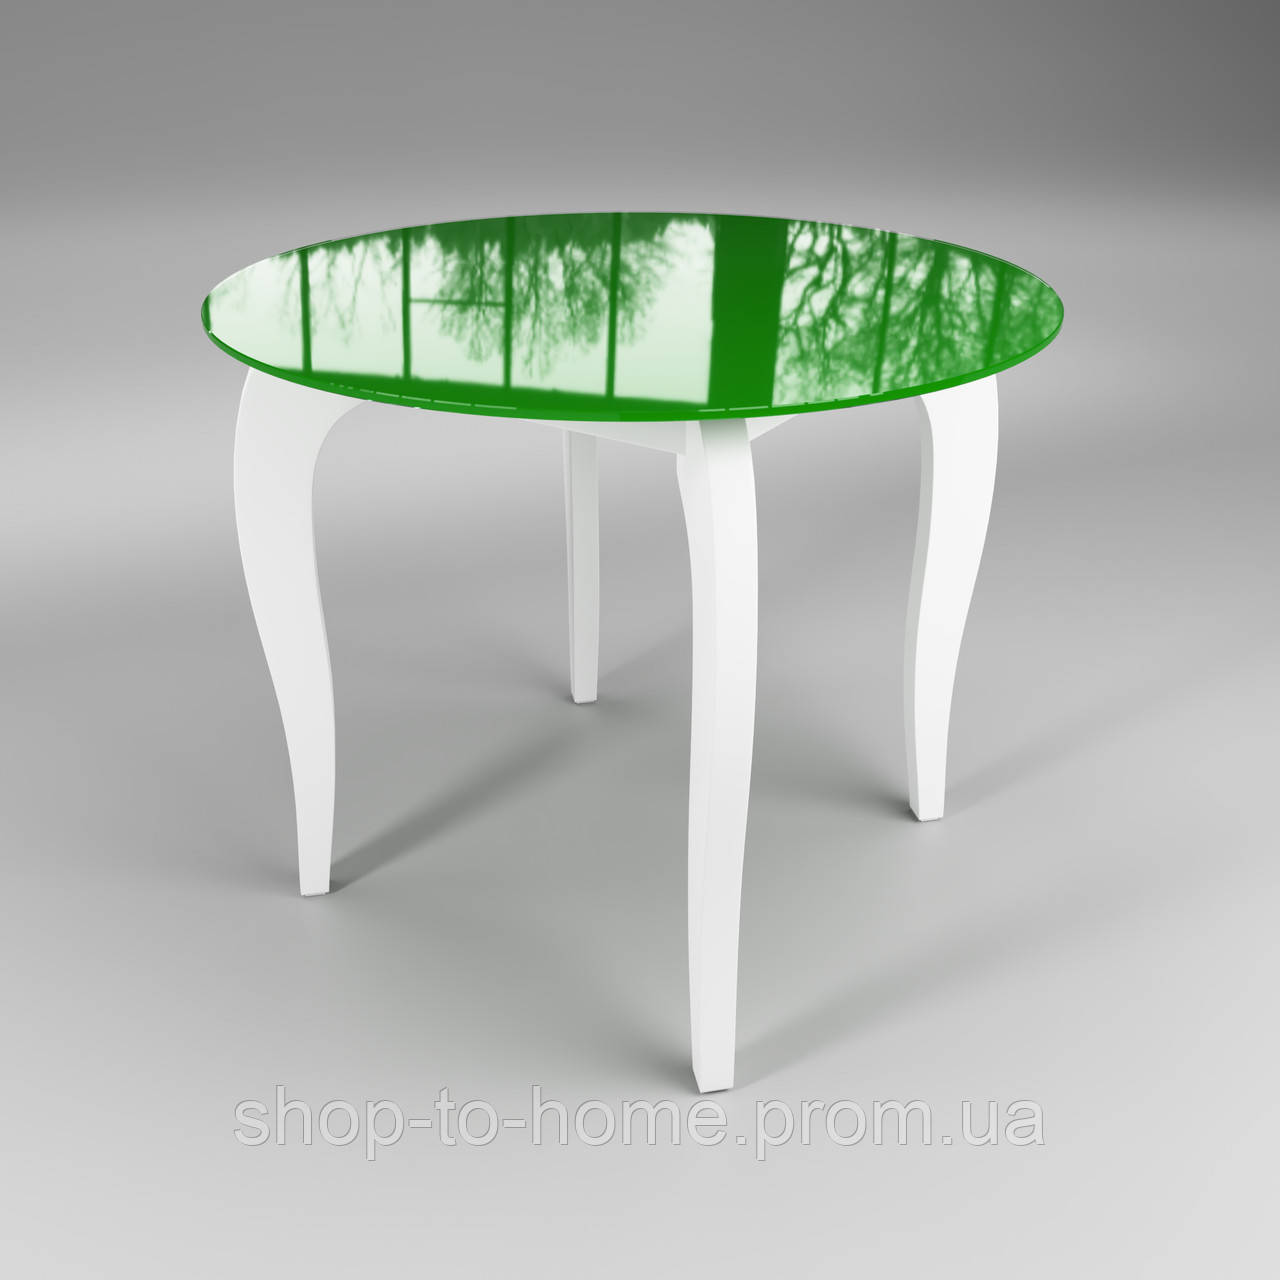 

Стол стеклянный Император Круг зелено-белый Sentenzo. Кухонный стол. Обеденный стол, Черный